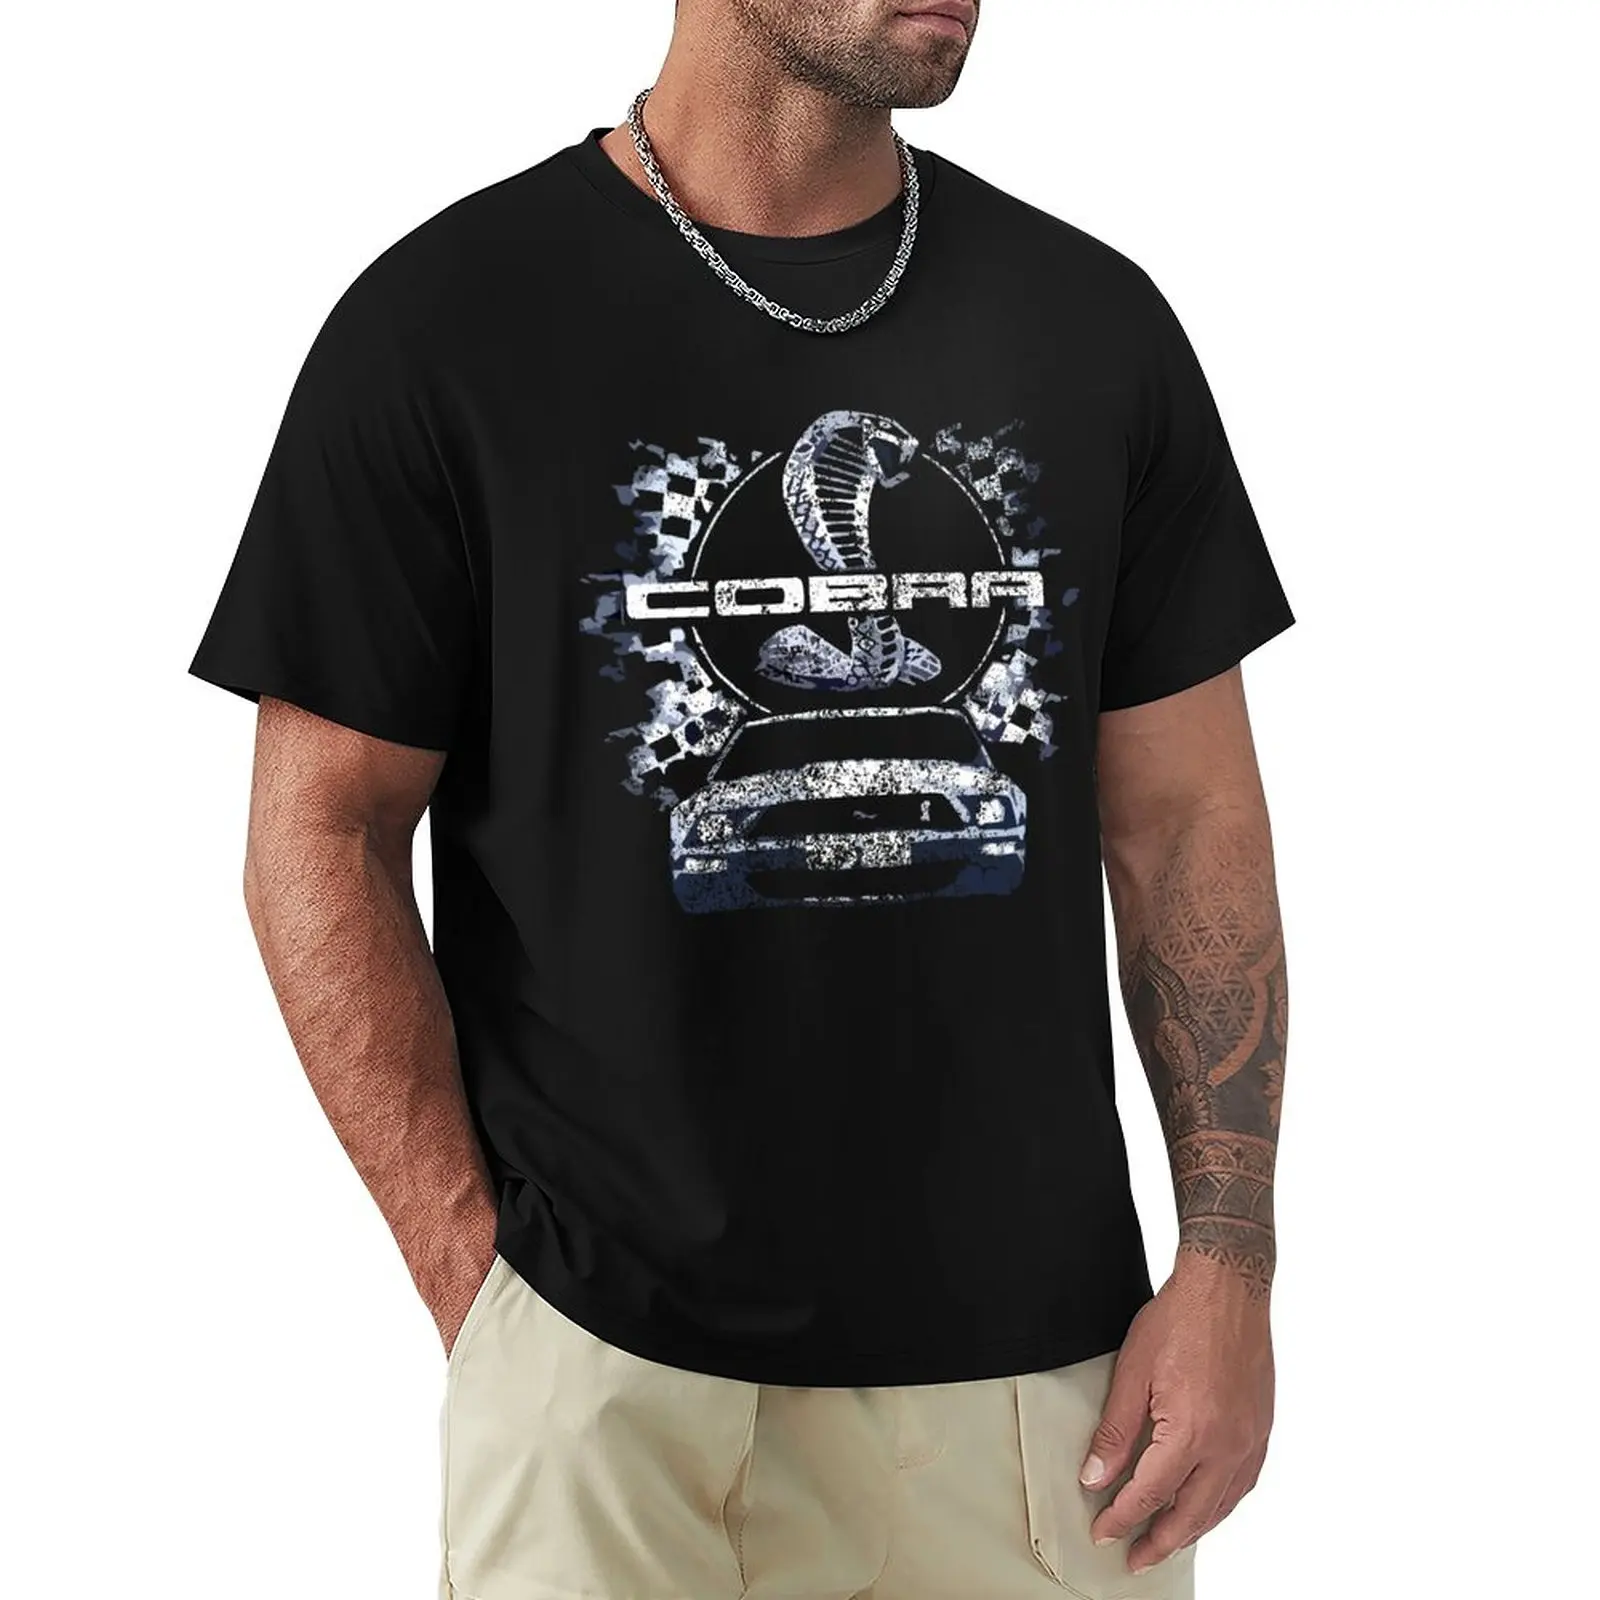 Мужская винтажная Футболка с принтом кобры, Mustang GT500 футболка мужская с принтом тарелок забавная тенниска с графическим принтом винтажная майка